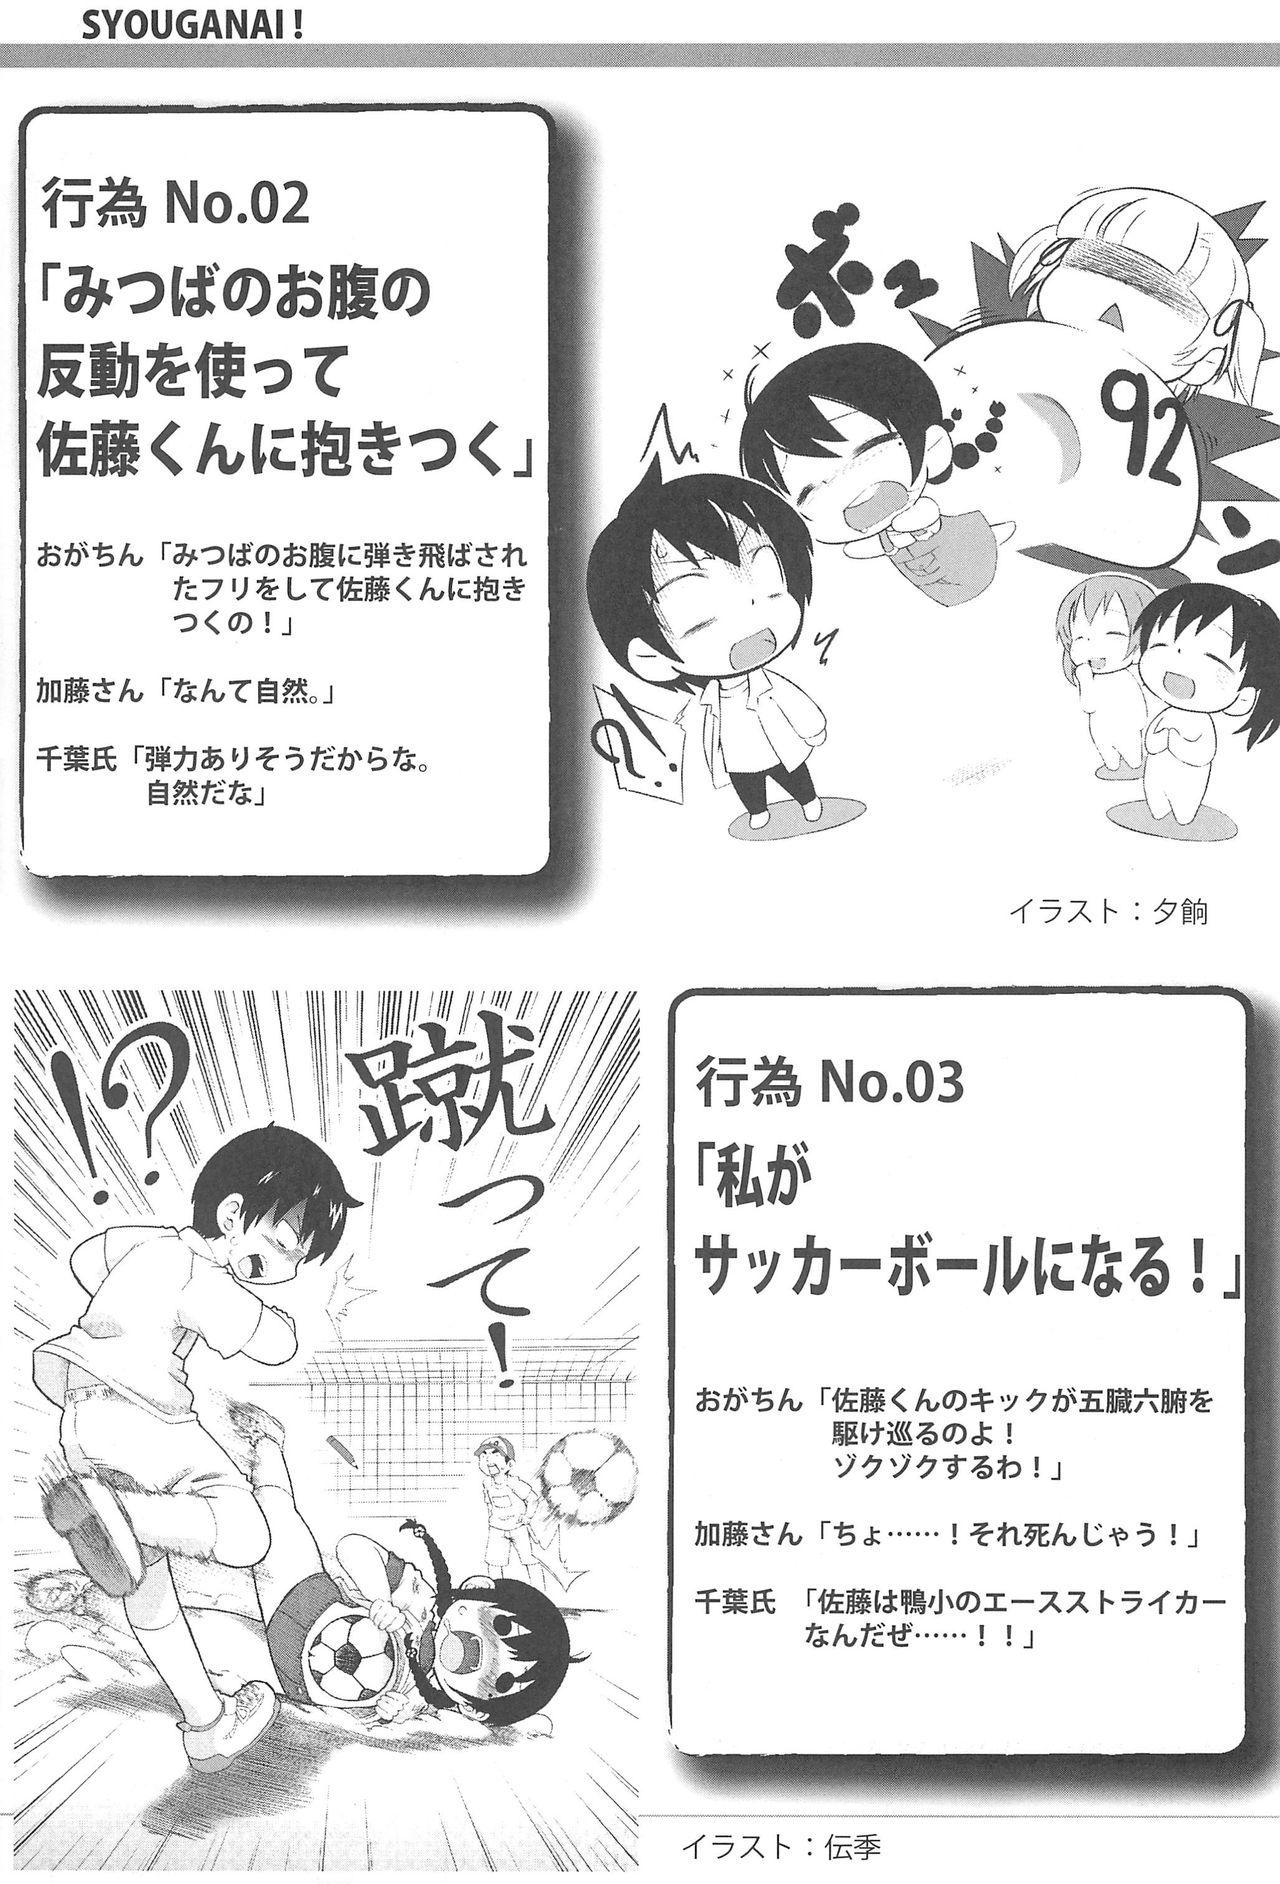 Les Mitsu PA! - Mitsudomoe First - Page 9